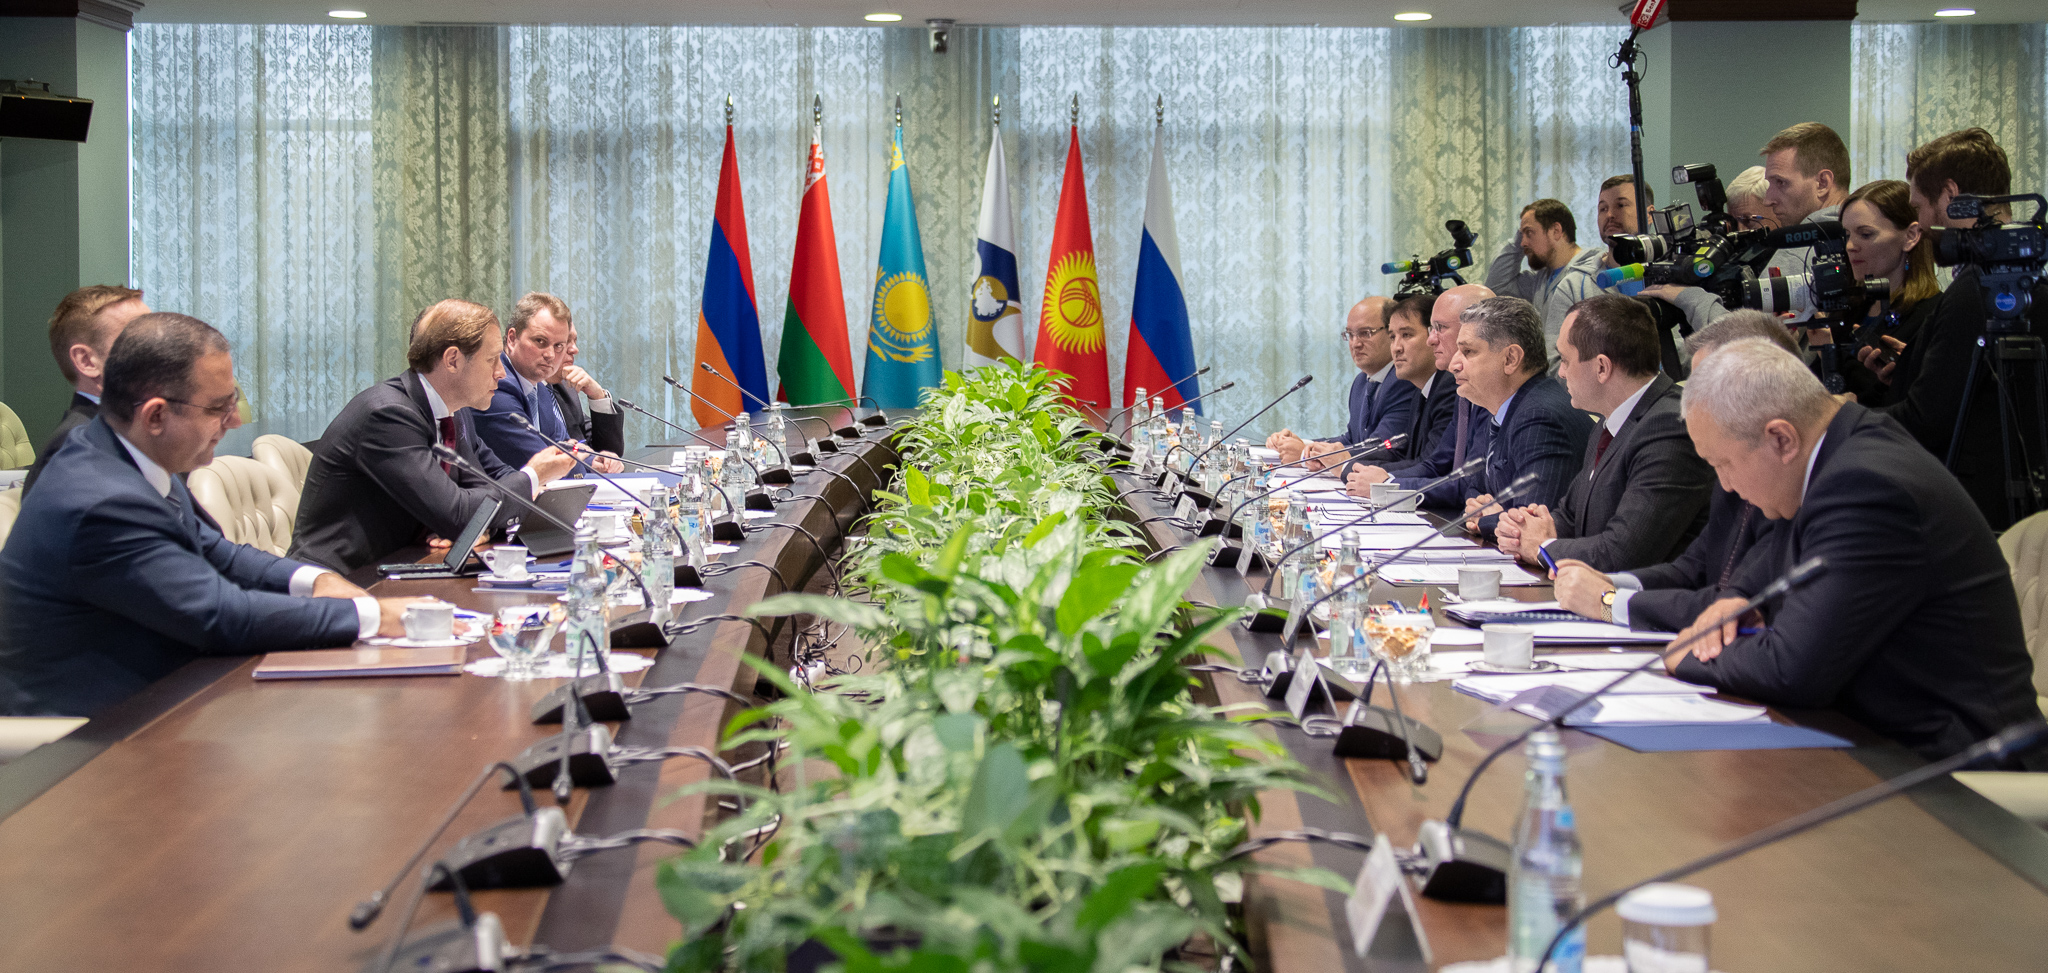 В ЕЭК состоялась встреча министров промышленности евразийской "пятерки"  